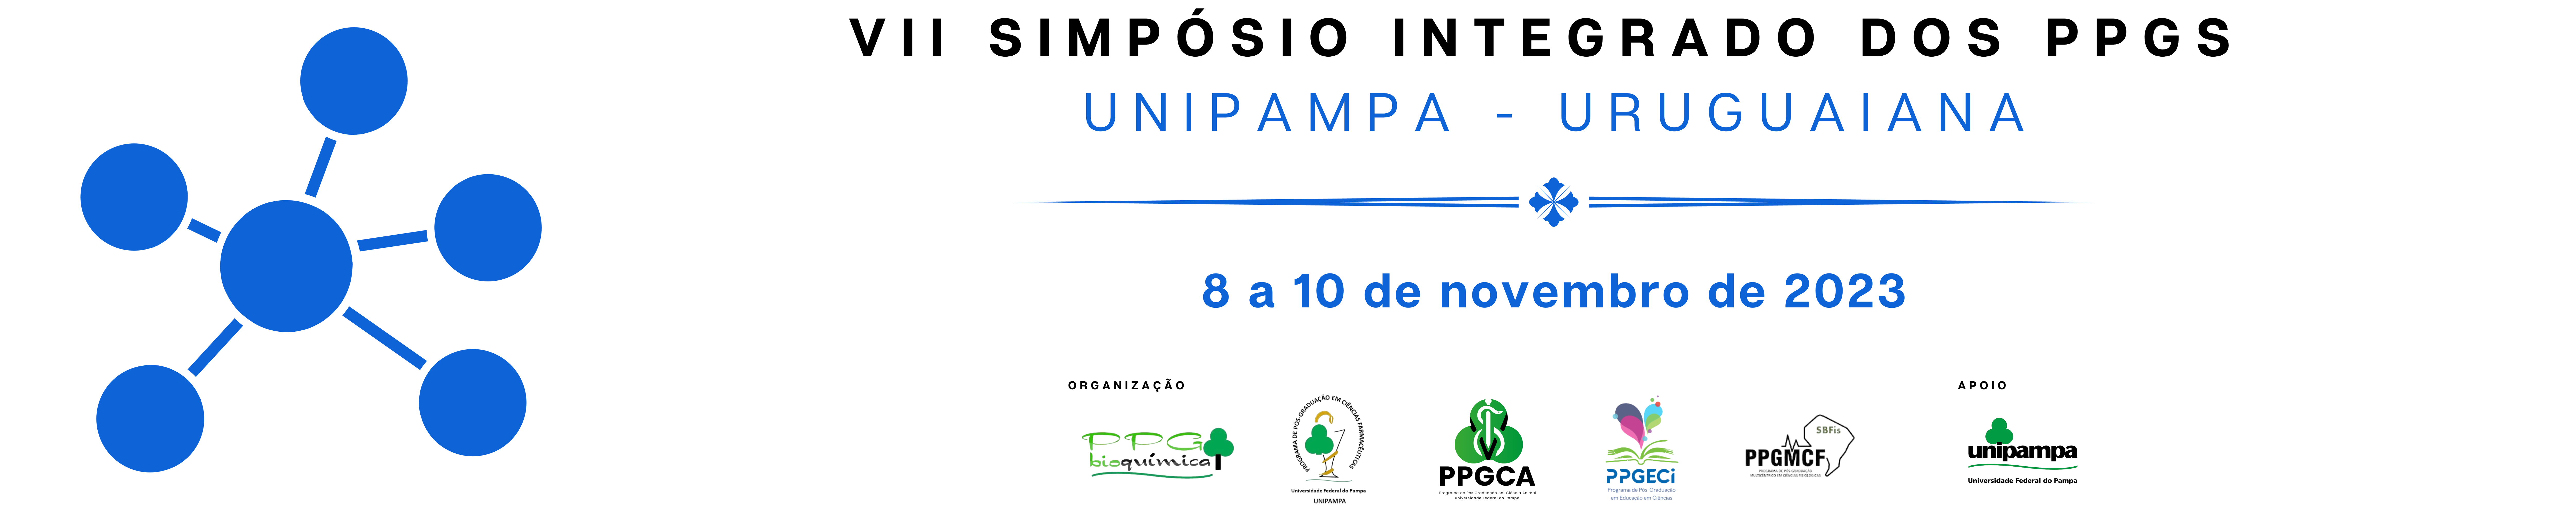 Simpósio Integrado dos PPGs de Uruguaiana